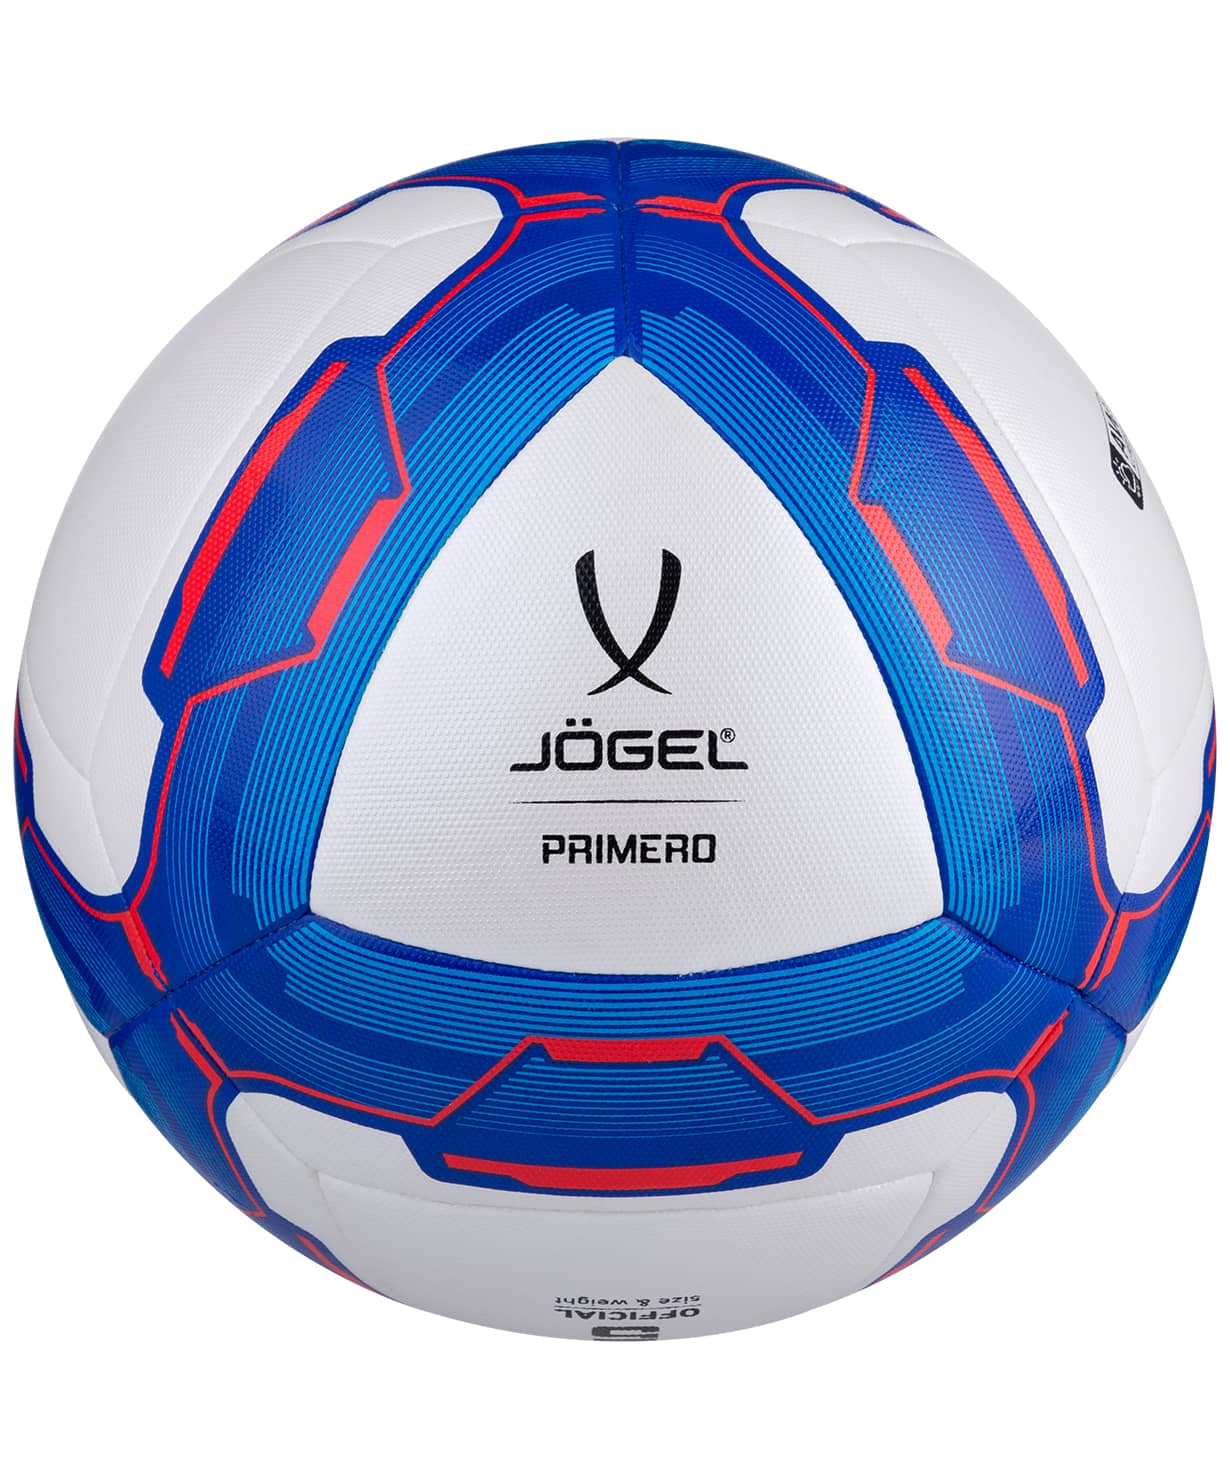 фото Jögel PRIMERO мяч футбольный  размер 4 Football-54 